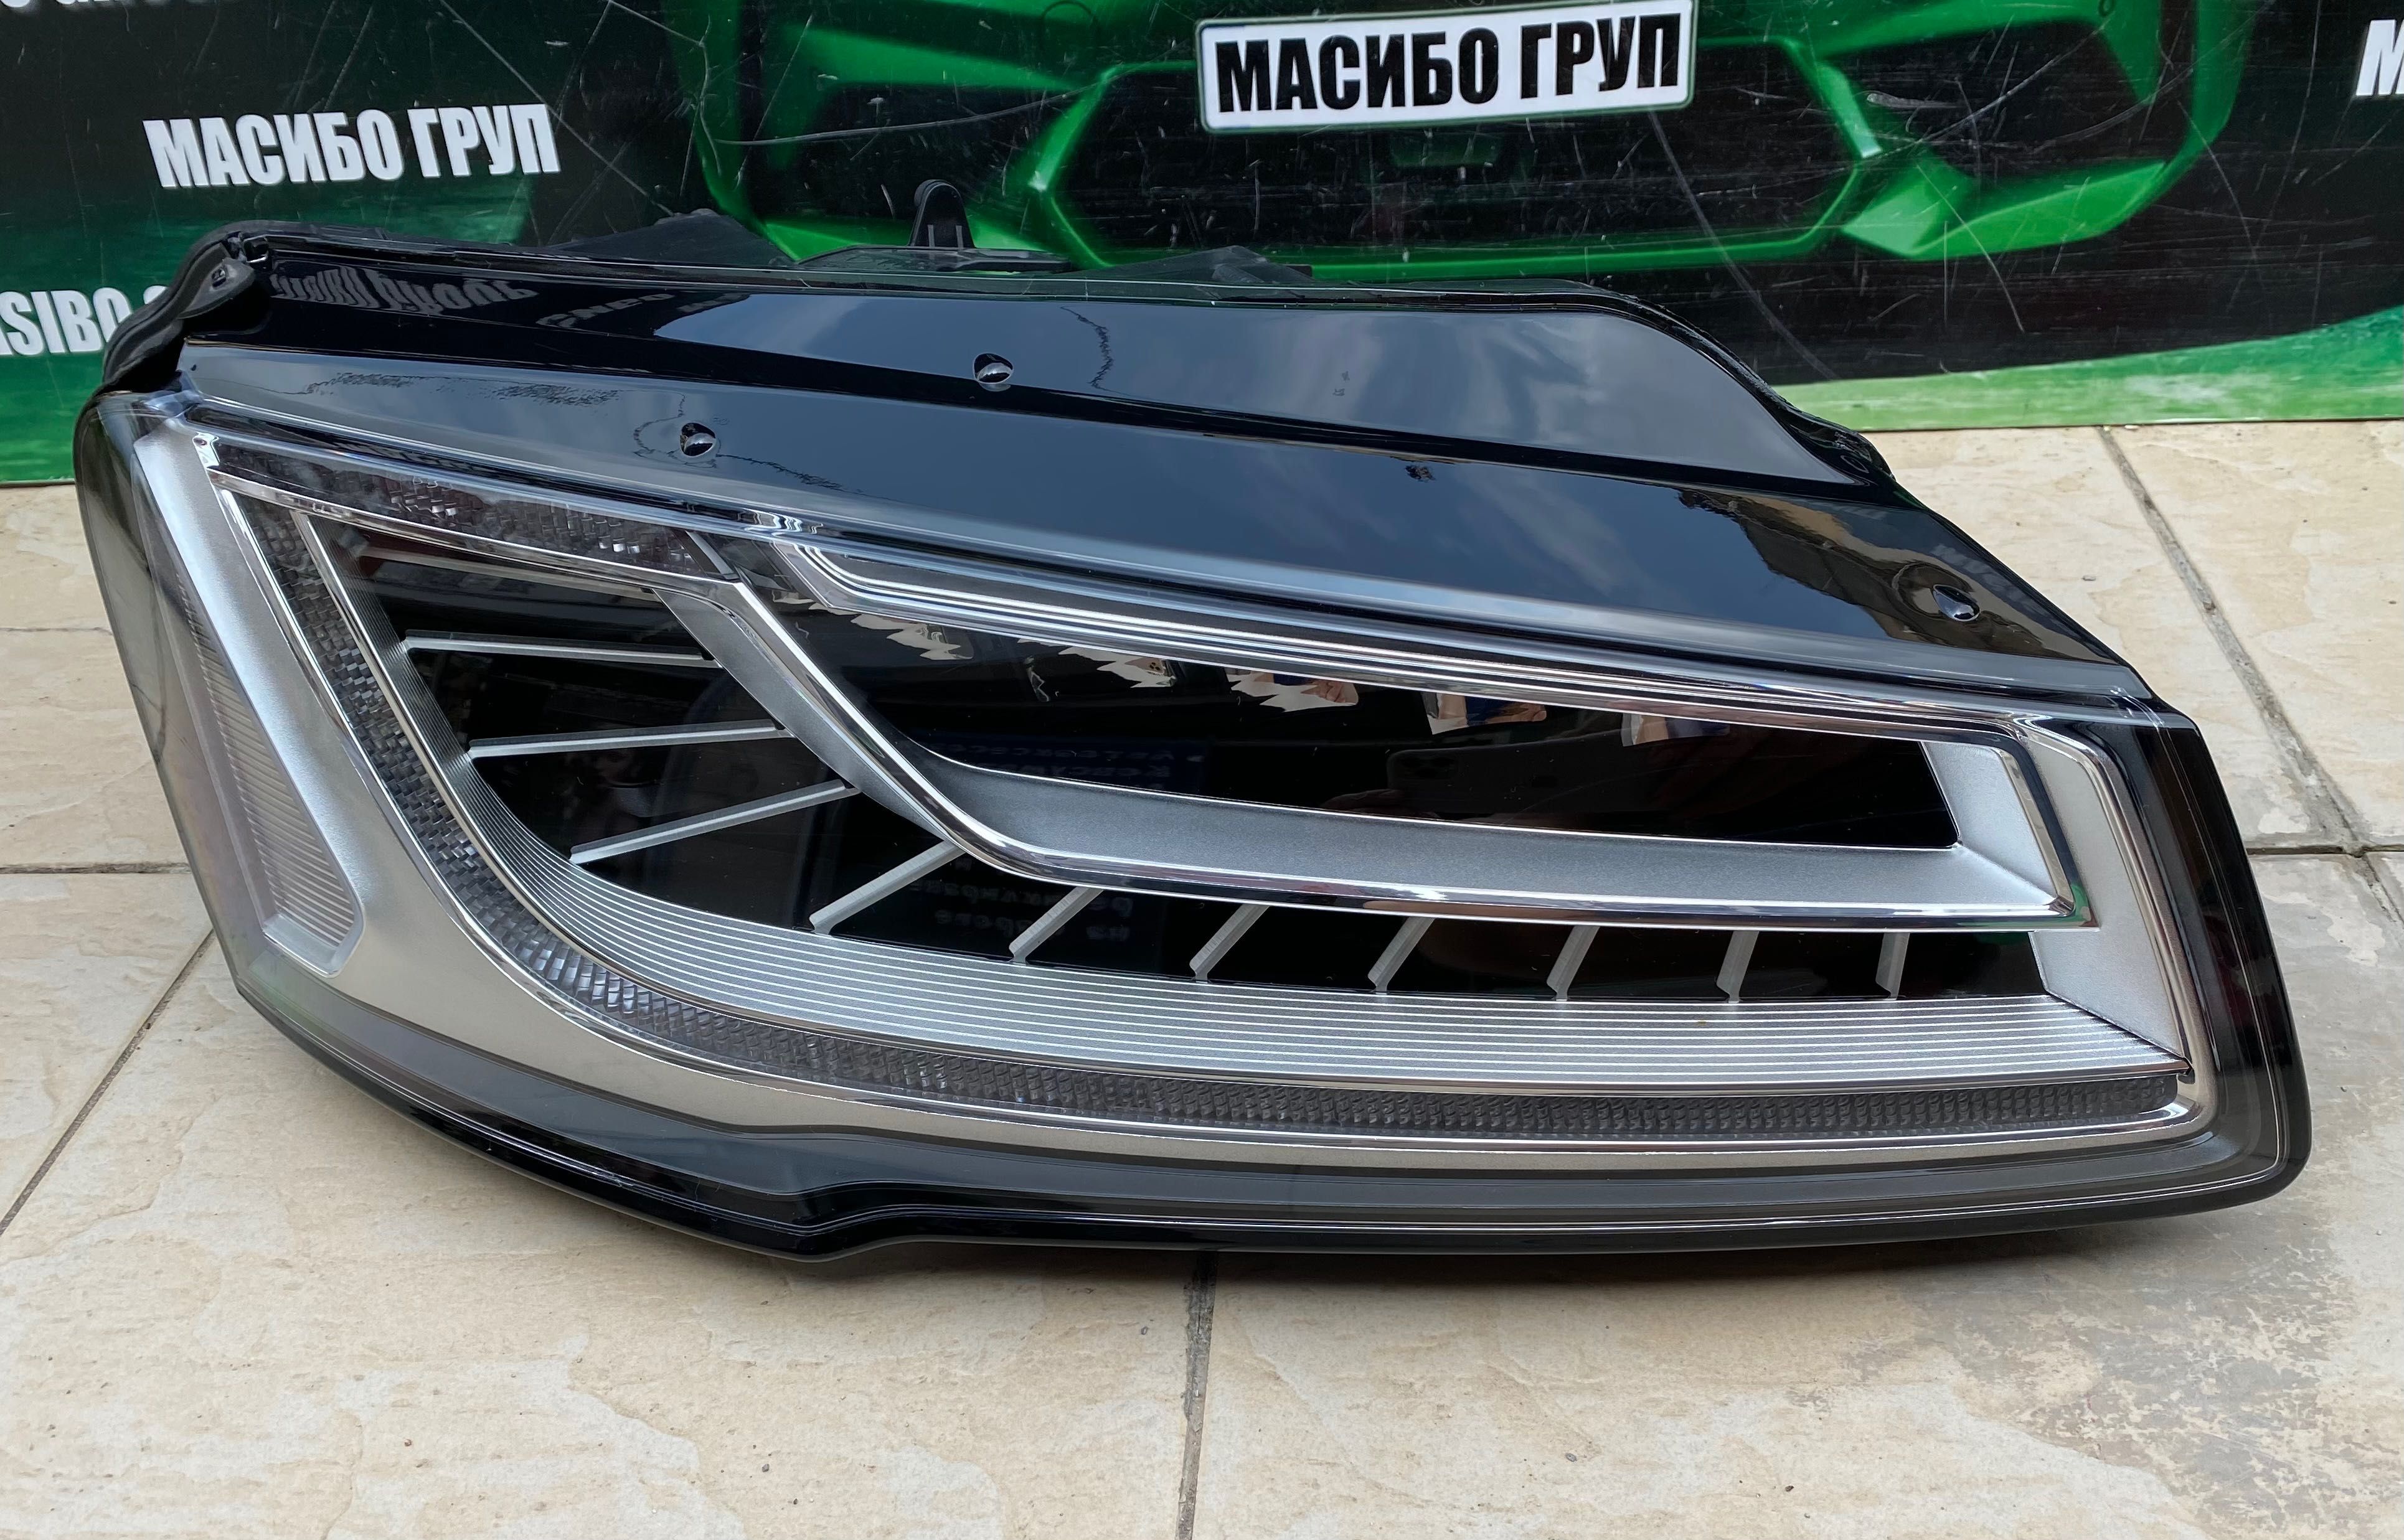 Фарове far Matrix фар за Ауди А8 Audi A8 4H фейс